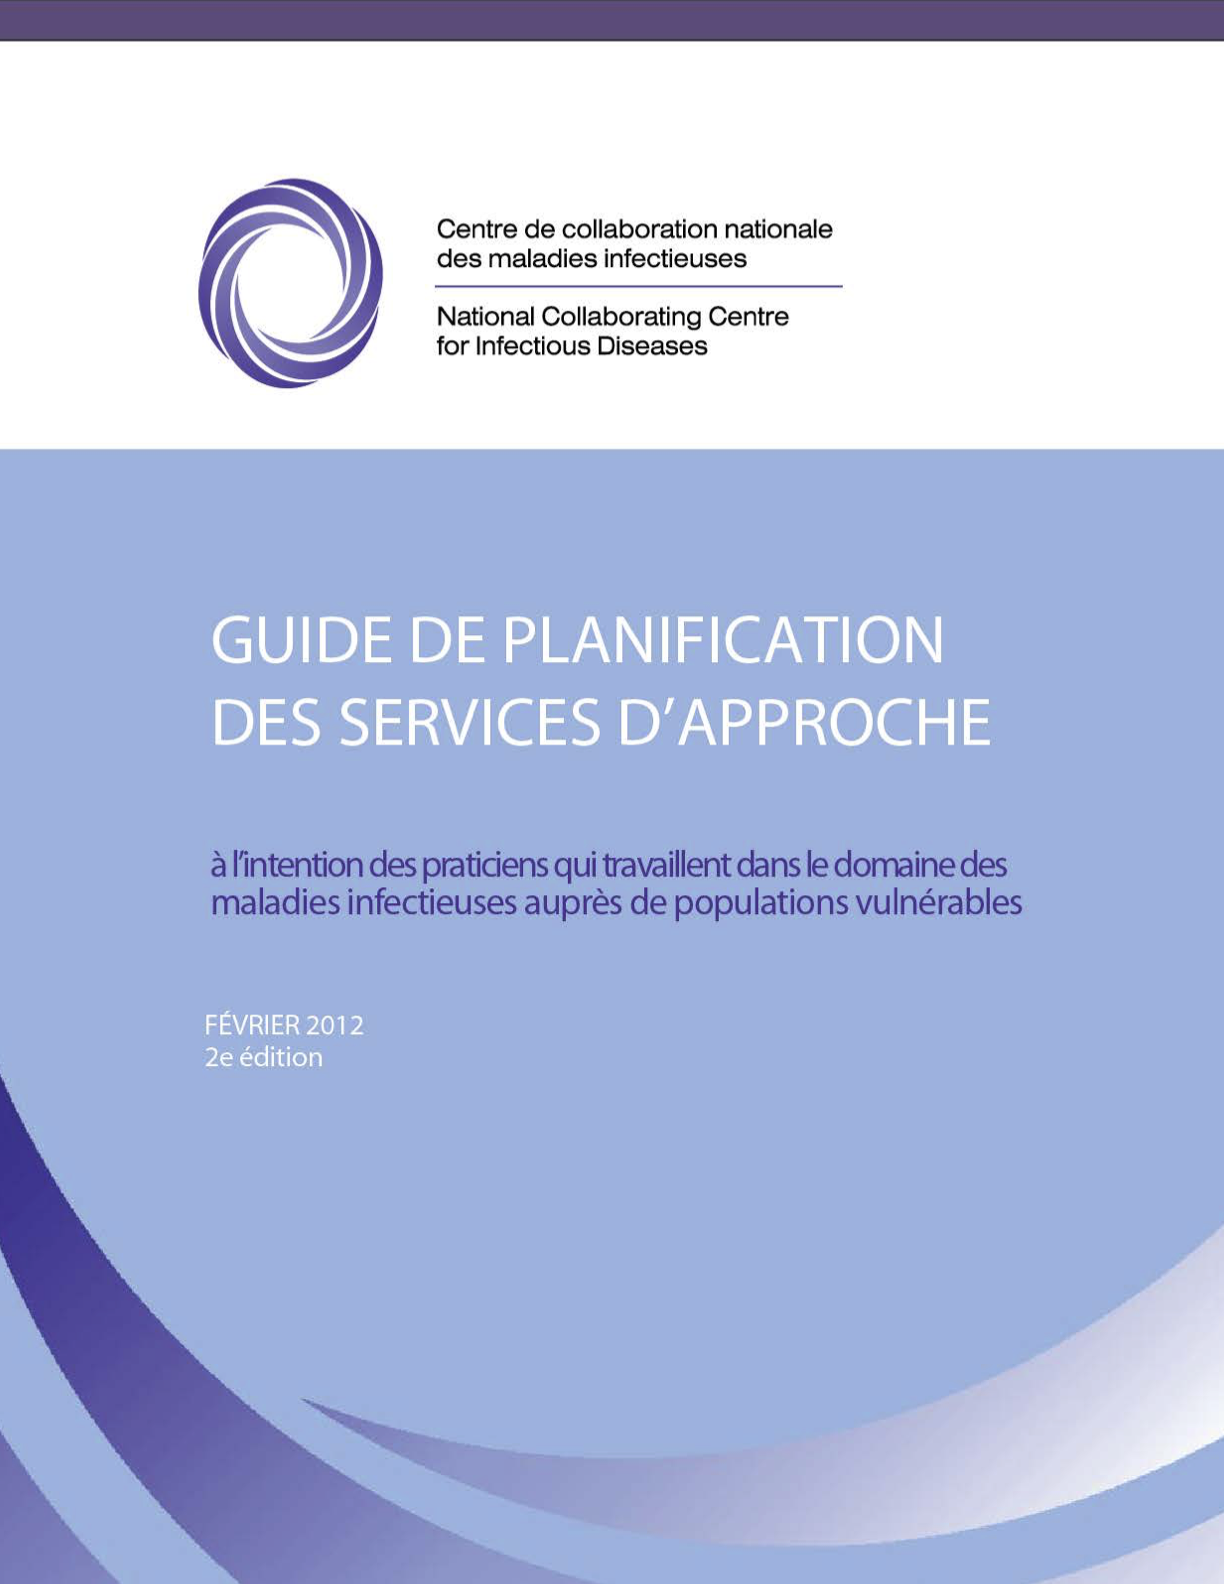 Guide de planification des services d'approche à l’intention des praticiens qui travaillent dans le domaine des maladies infectieuses auprès de populations vulnérables